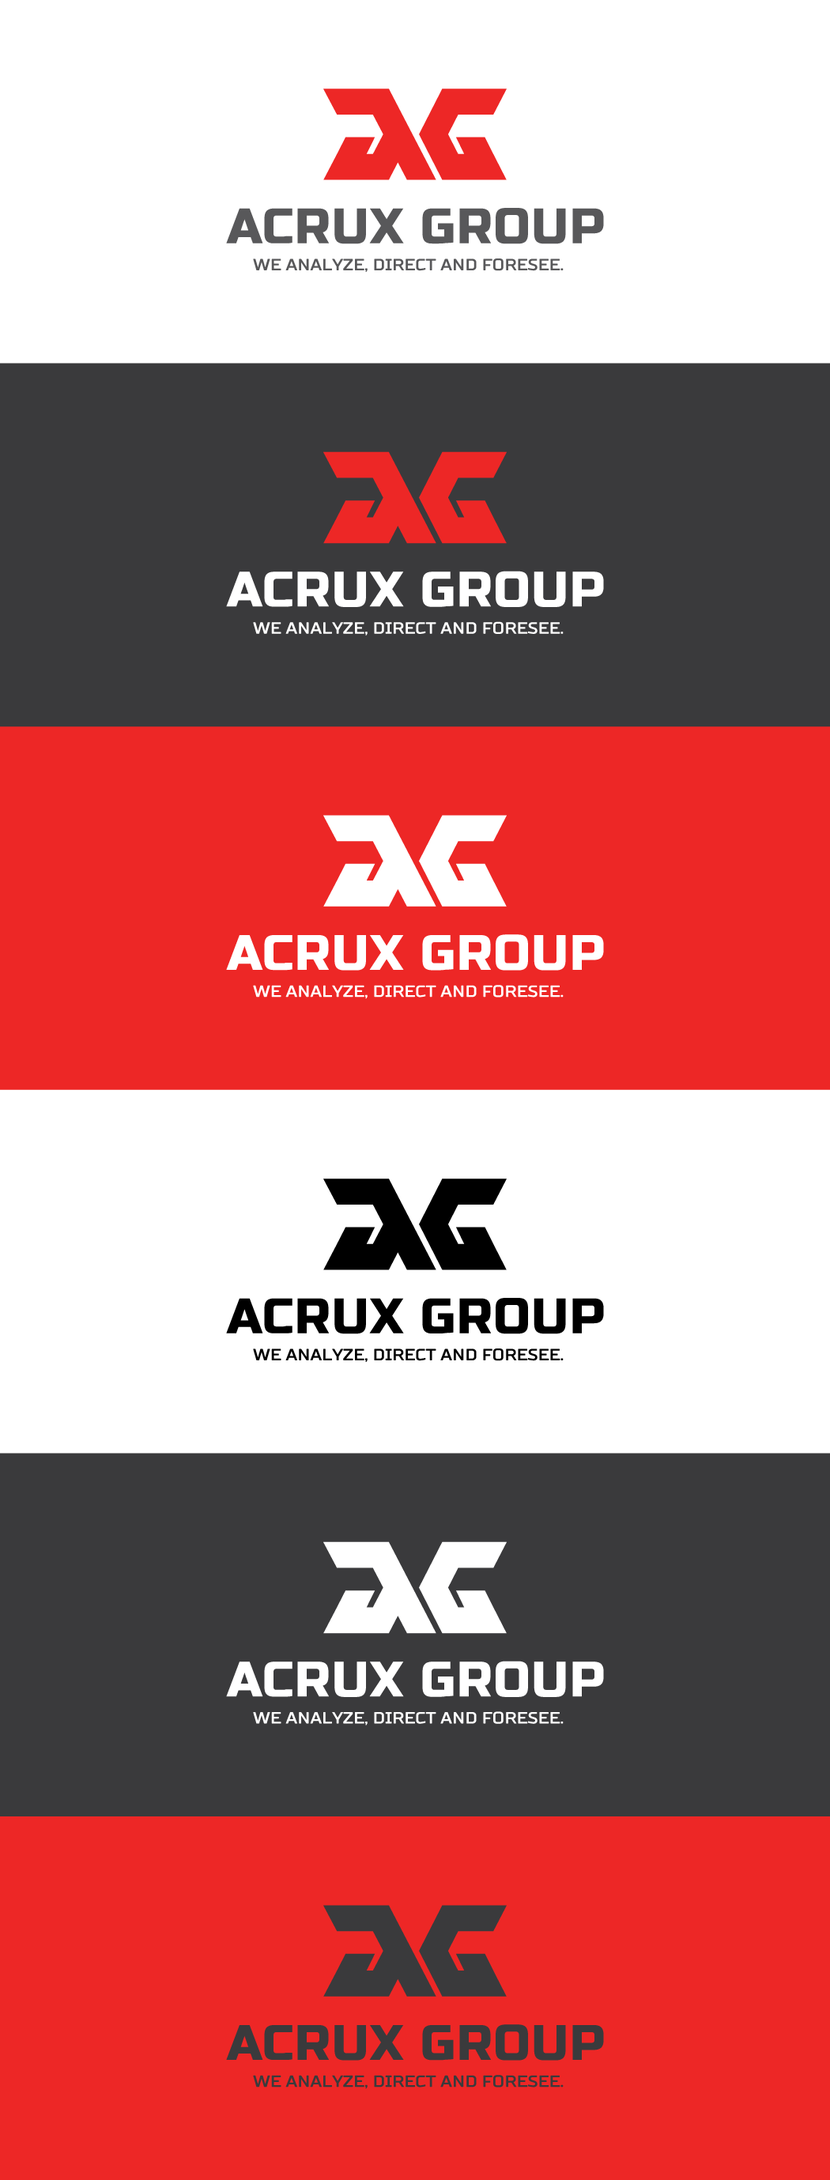 монограмма A+G - Логотип для товарной експортно-импортной компании